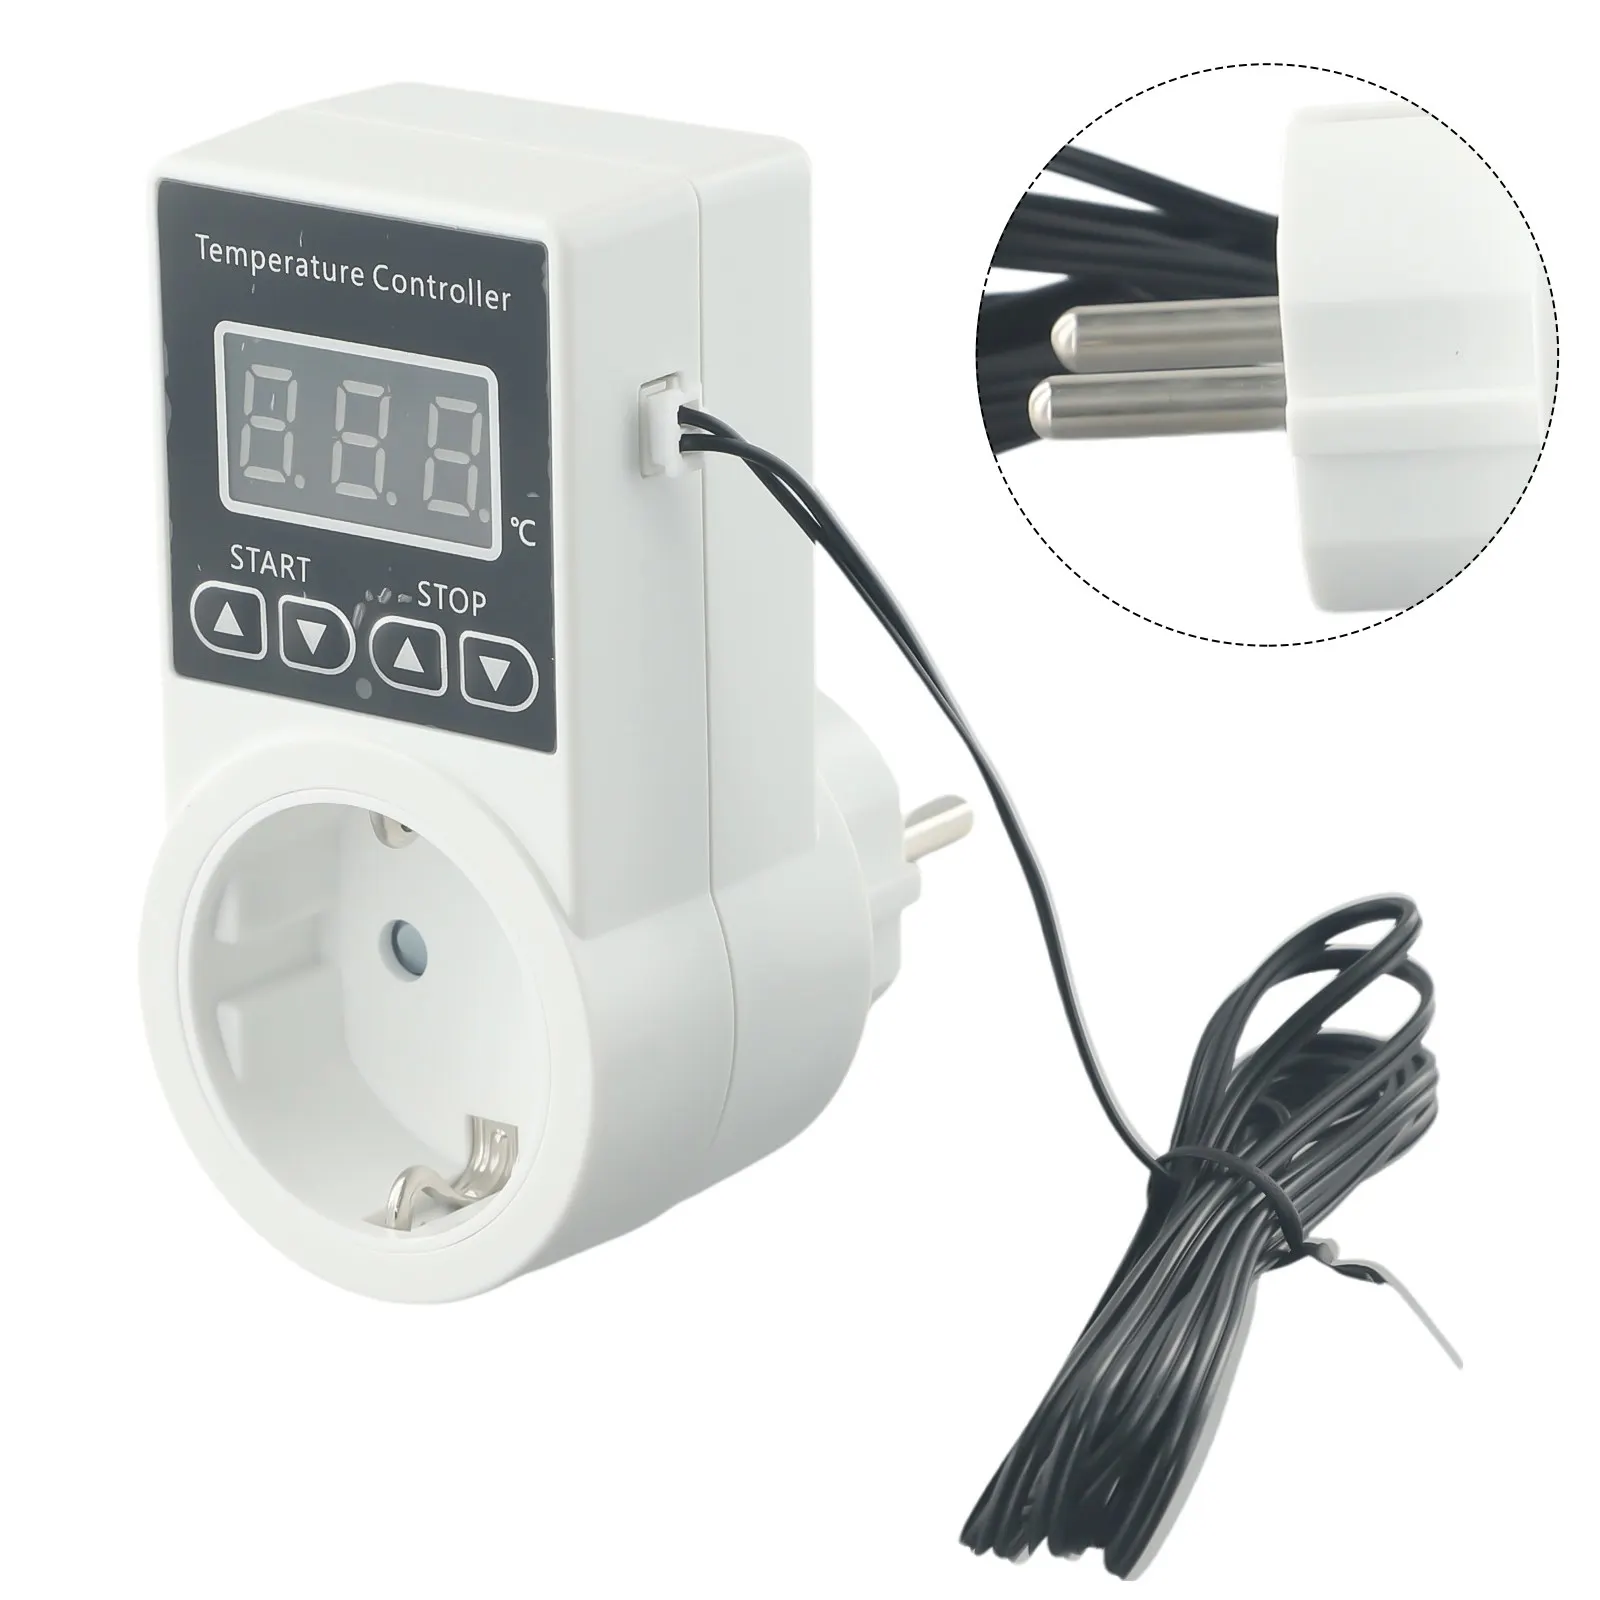 Temperatuur Schakelaar Thermostaat Sockets Digital Eu Plug 100-240V Ac Voor Kas Verwarming Lcd Display Temperatuurregelaar